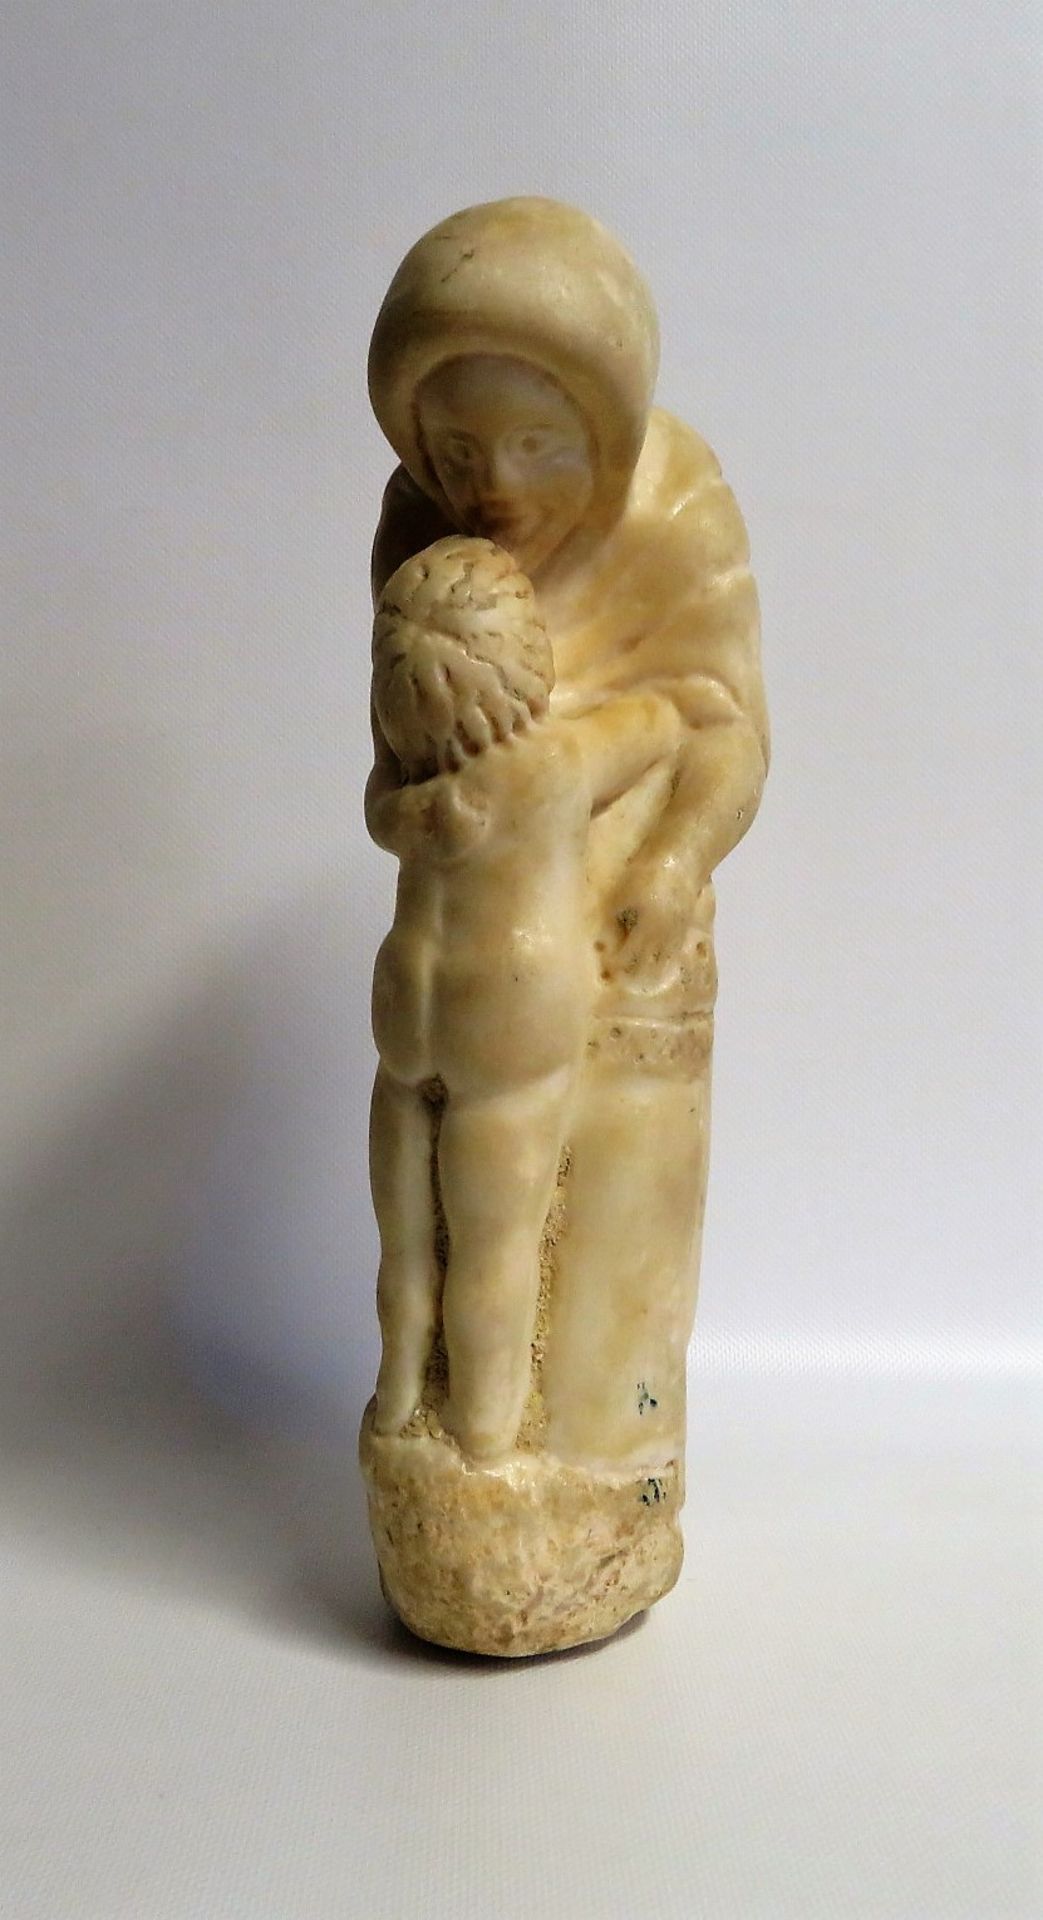 Unbekannt, Mutter mit Kind, 1. Hälfte 20. Jahrhundert, weißer Marmor, 33 x 7 x 15 cm.